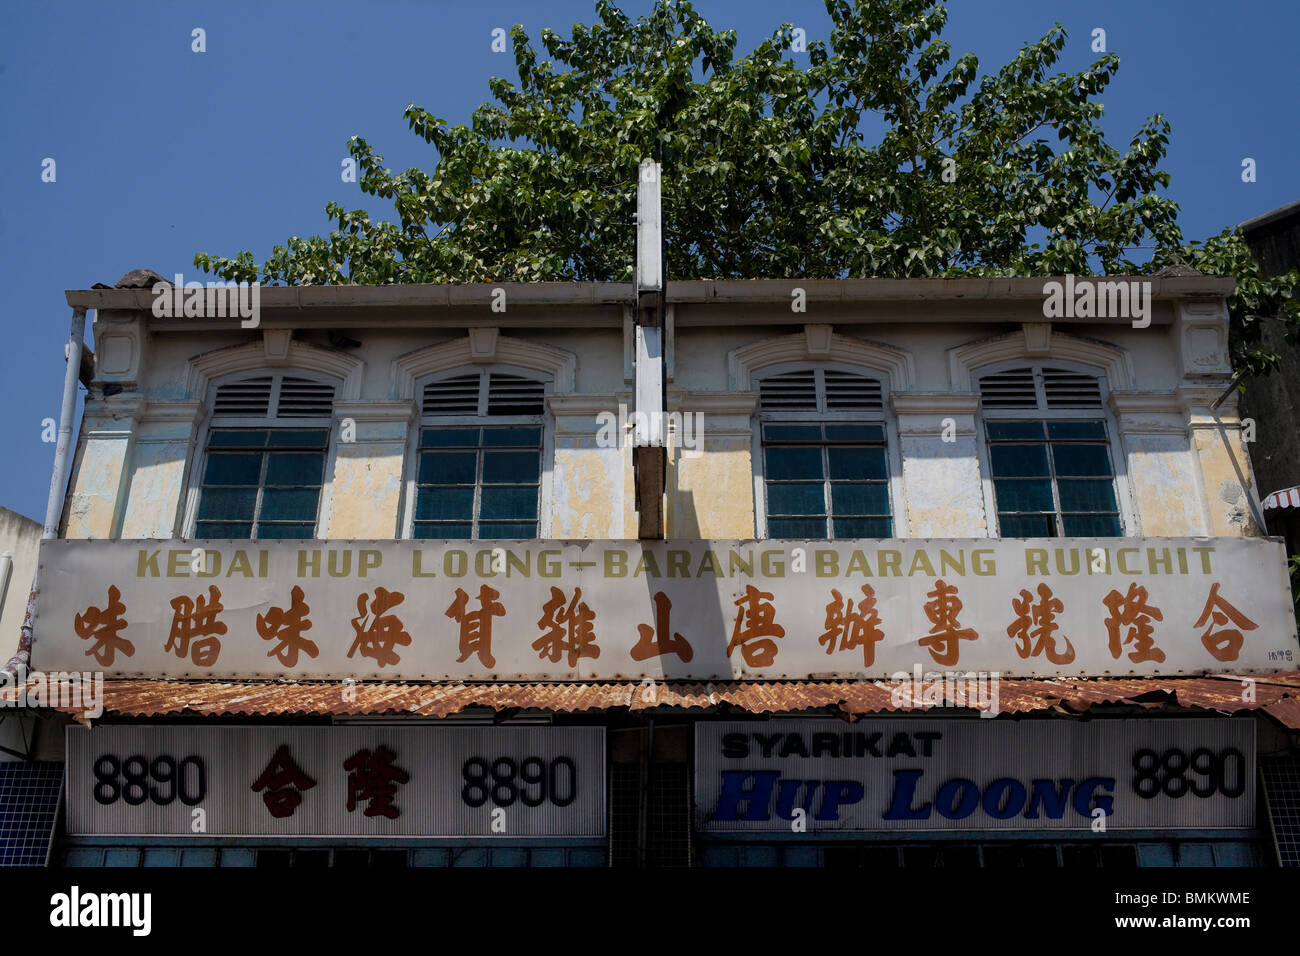 Negozi Tradizionali e la loro mandarin cartelloni nel vecchio quartiere cinese di Penang, Malaysia. Foto Stock